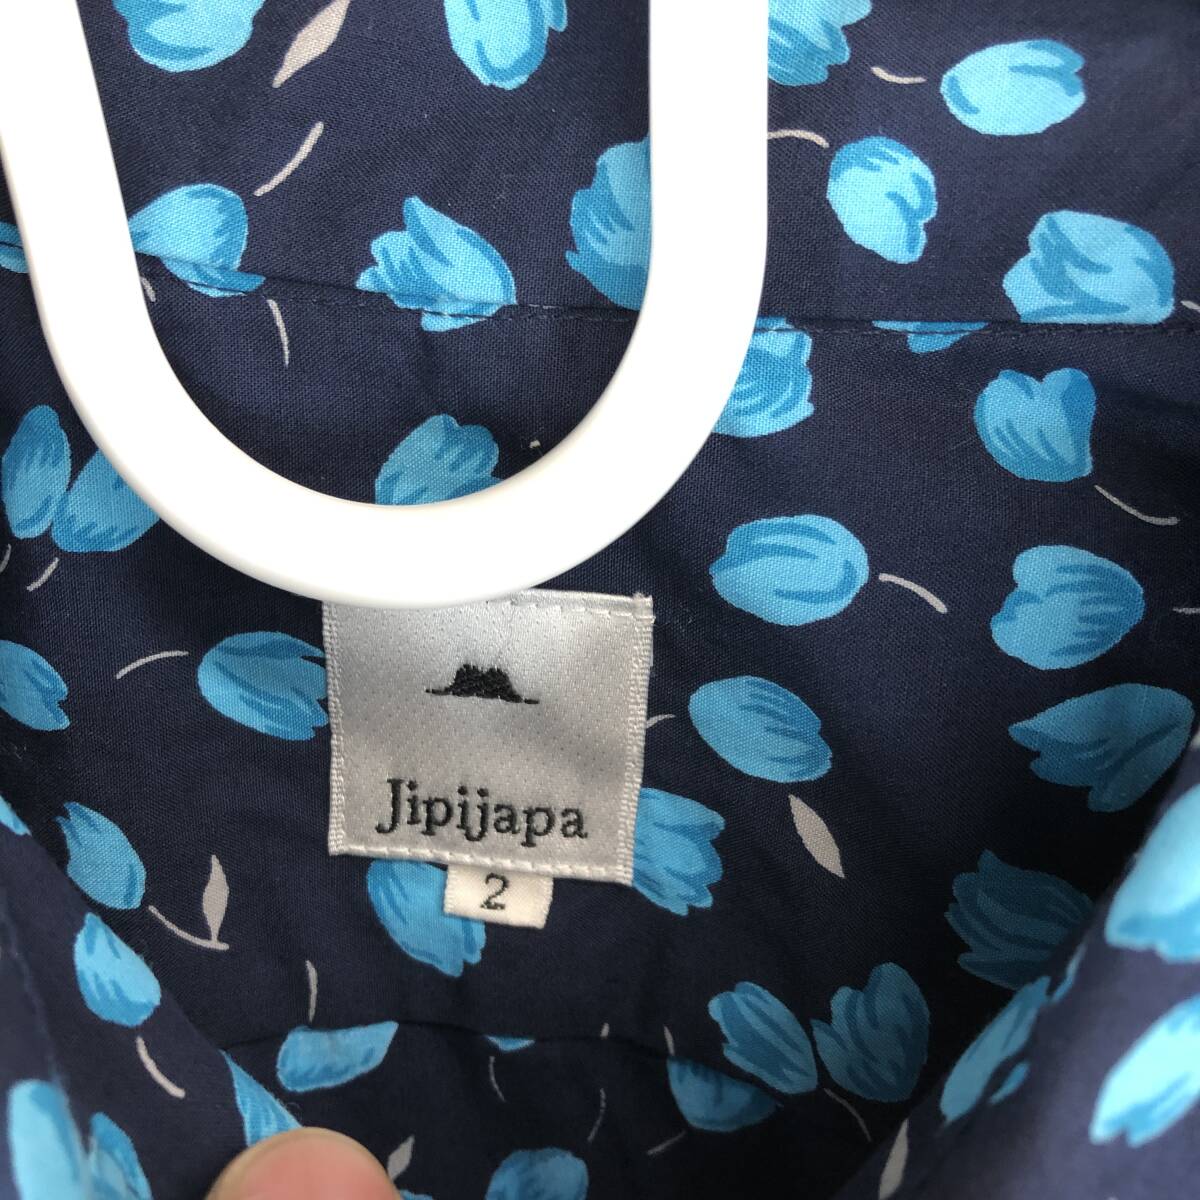 Jipijapa ヒピハパ 半袖ボタンシャツ 2サイズ コットン JP21501-03 日本製_画像3